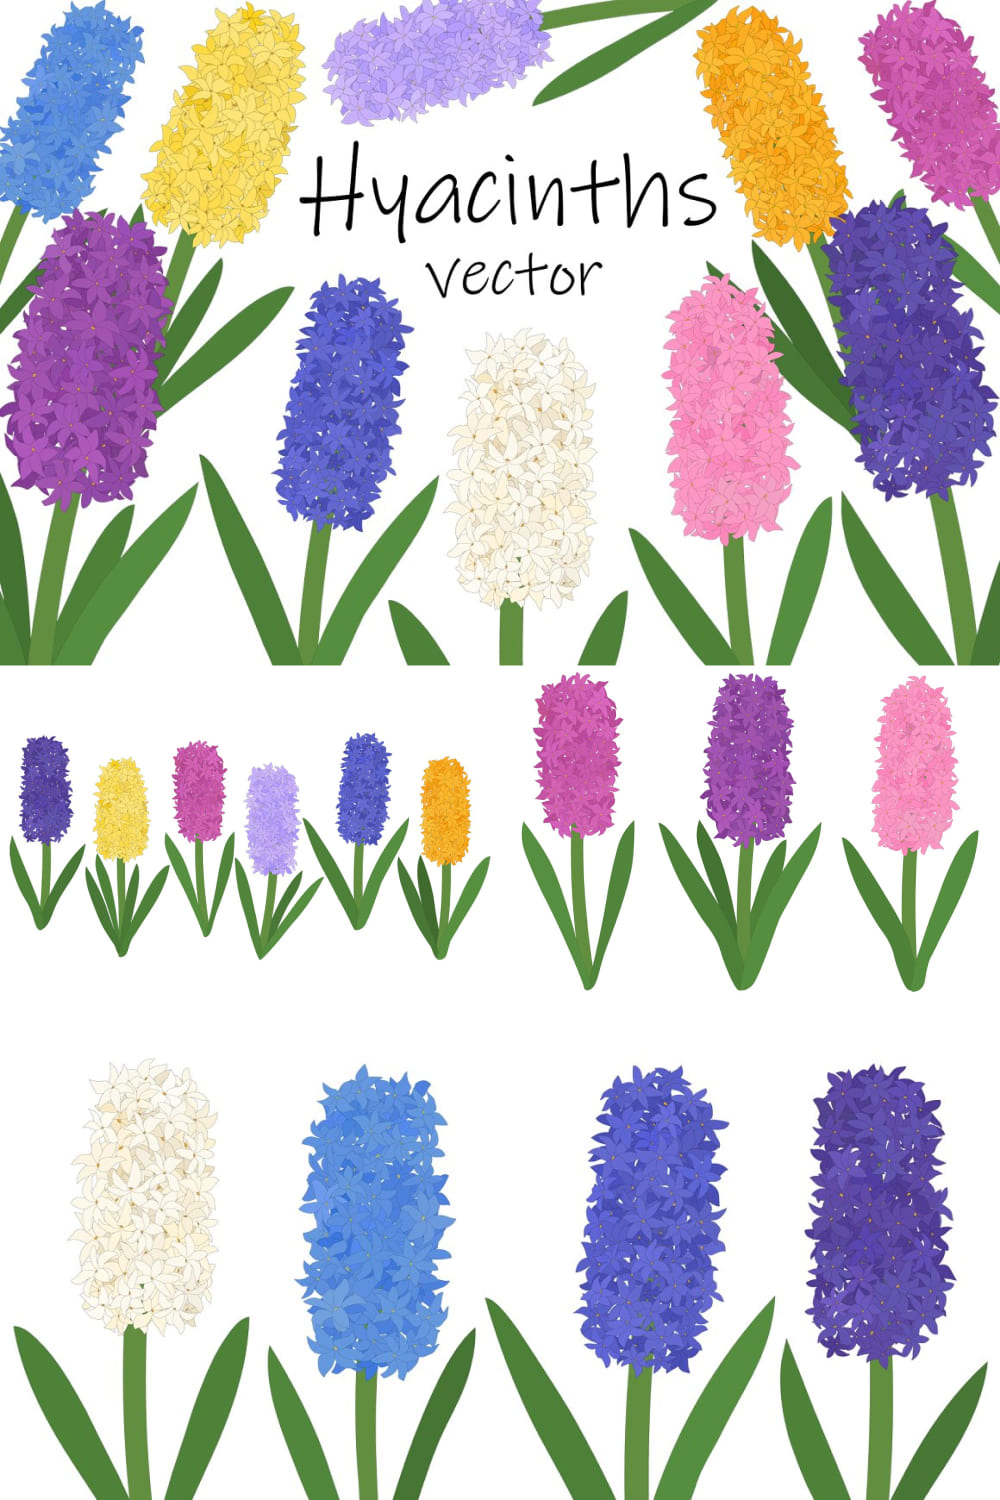 Hyacinths Flower. Hyacinths Vector pinterest image.